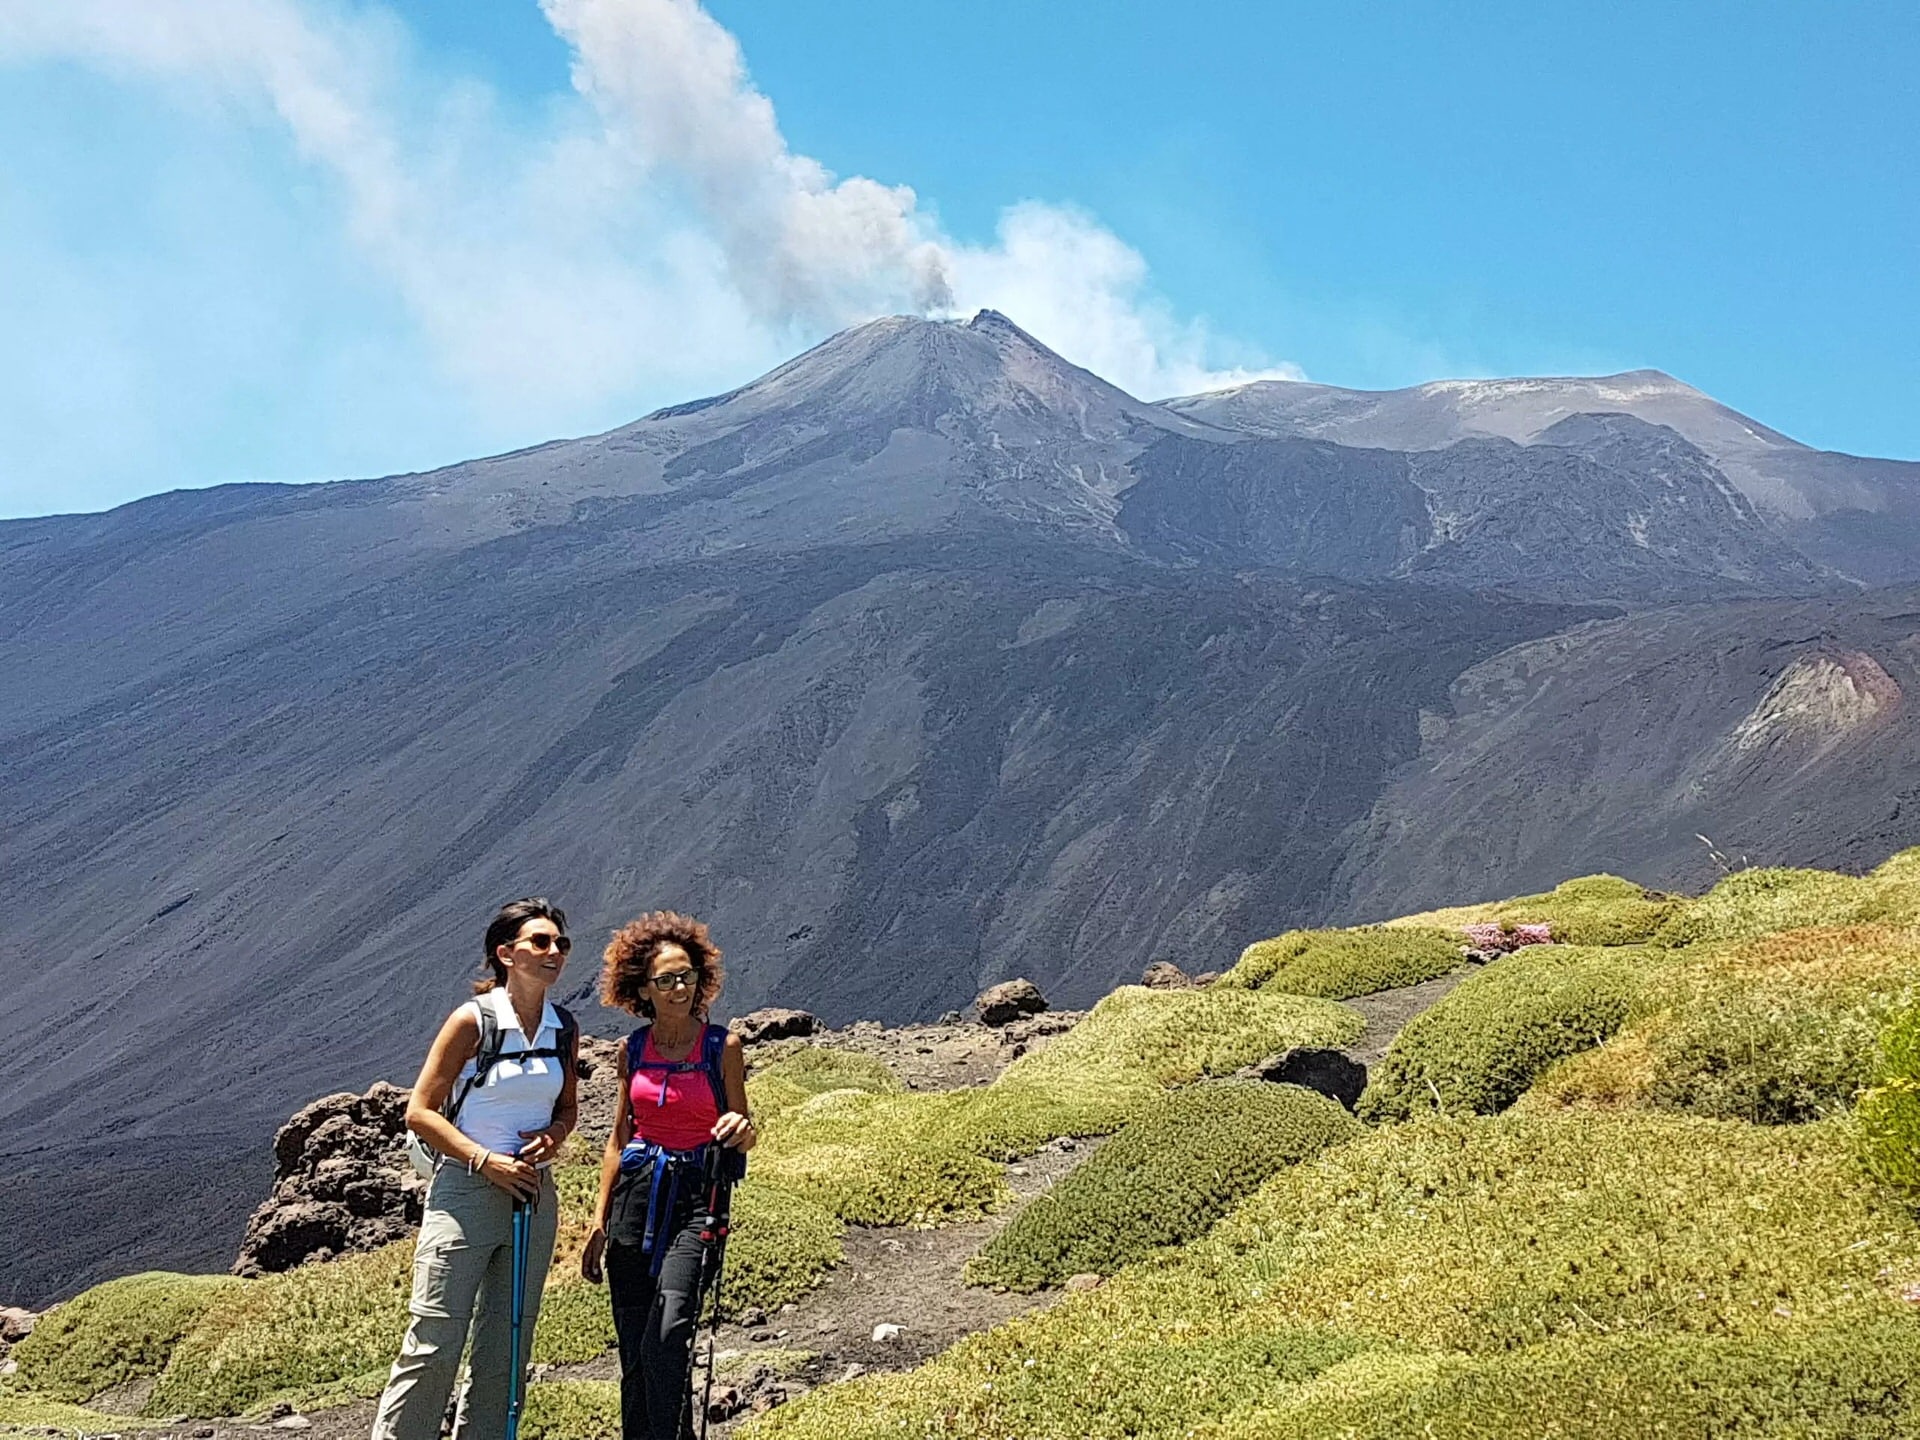 Escursione sul vulcano attivo più alto d'Europa!